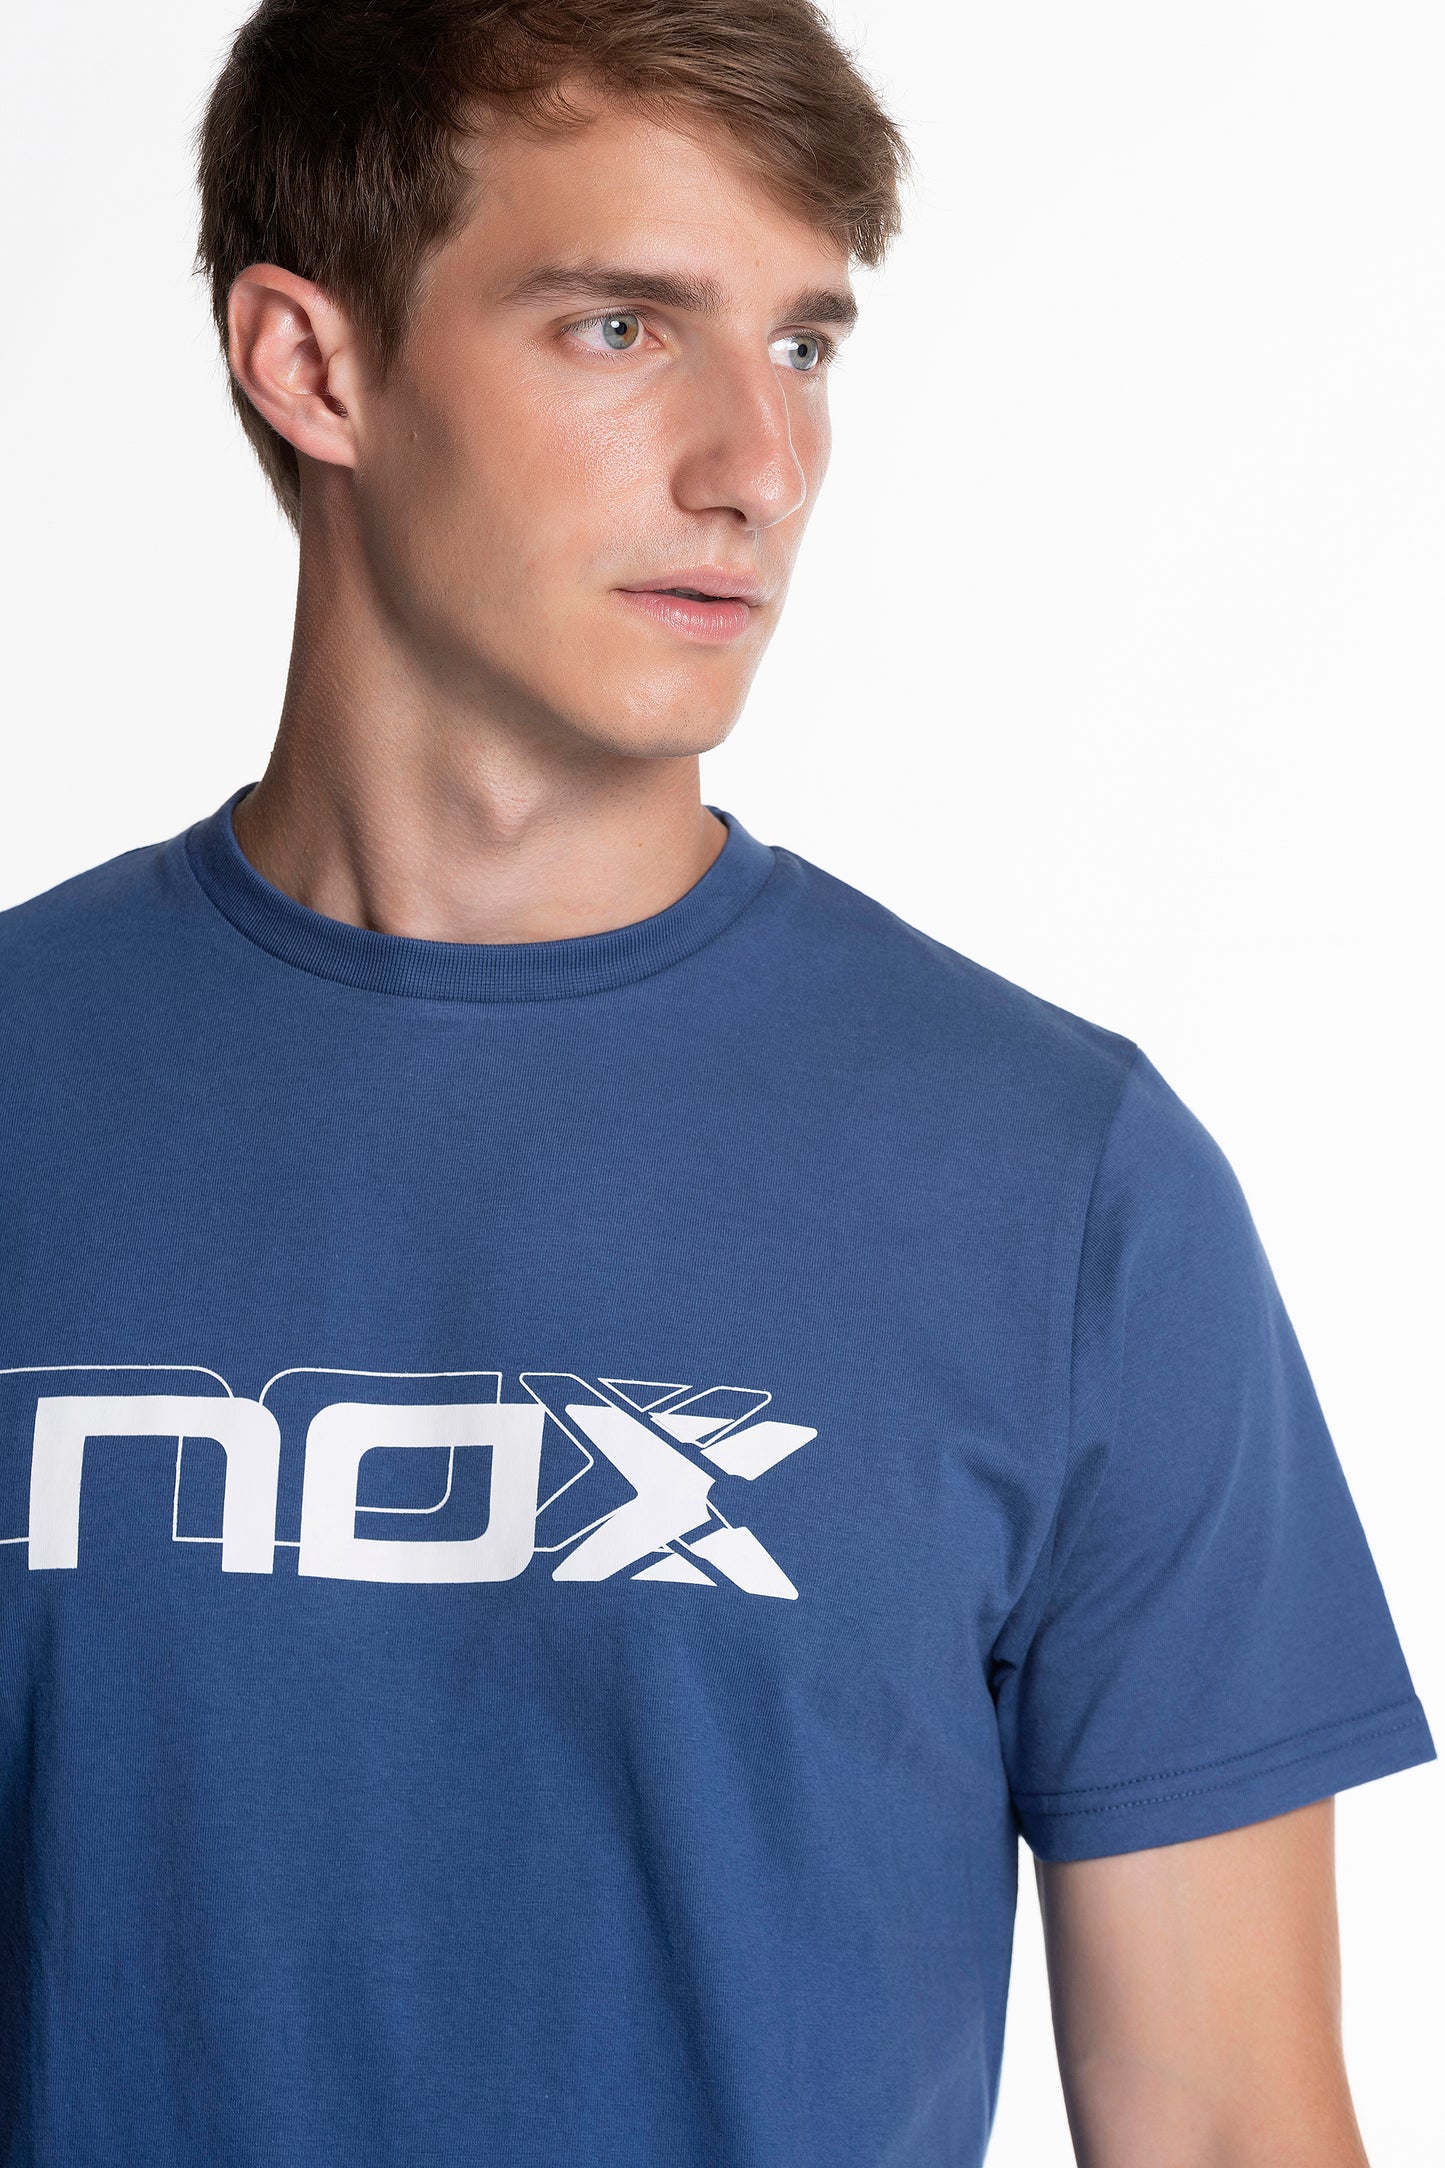 NOX T-shirt Blue Cotton